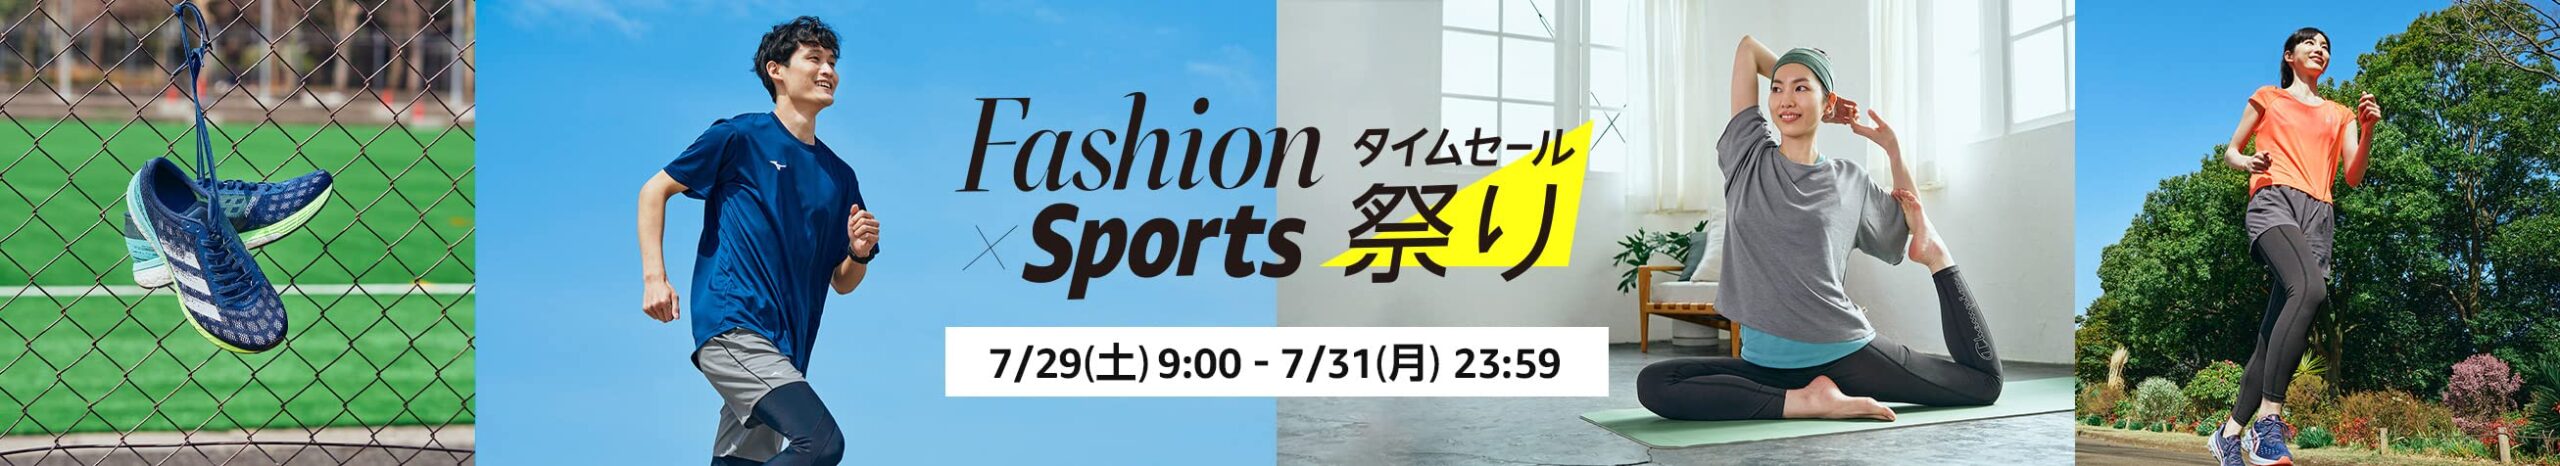 Amazon Fashion x Sports タイムセール祭り✨ ファッションタイムセール祭り 